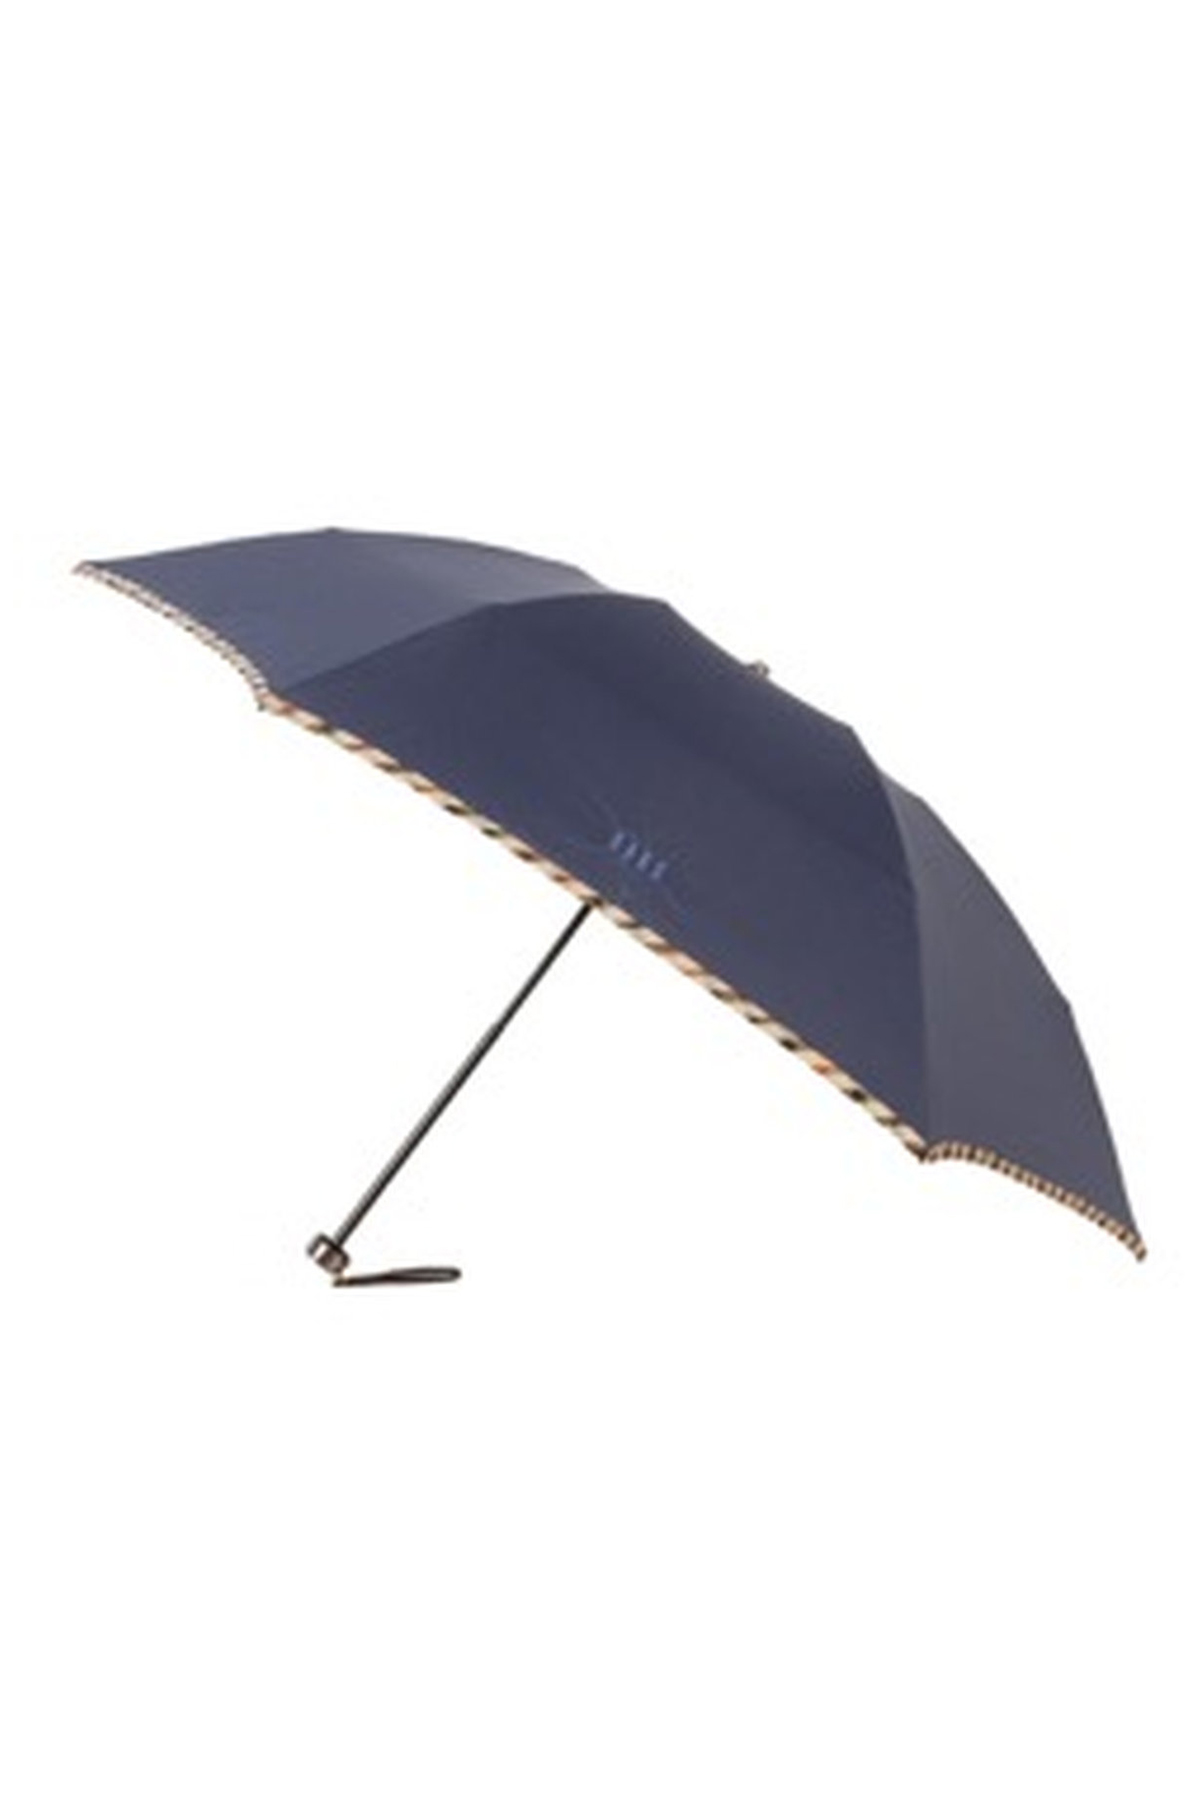 【雨傘】折りたたみ傘無地パイピング 詳細画像 8